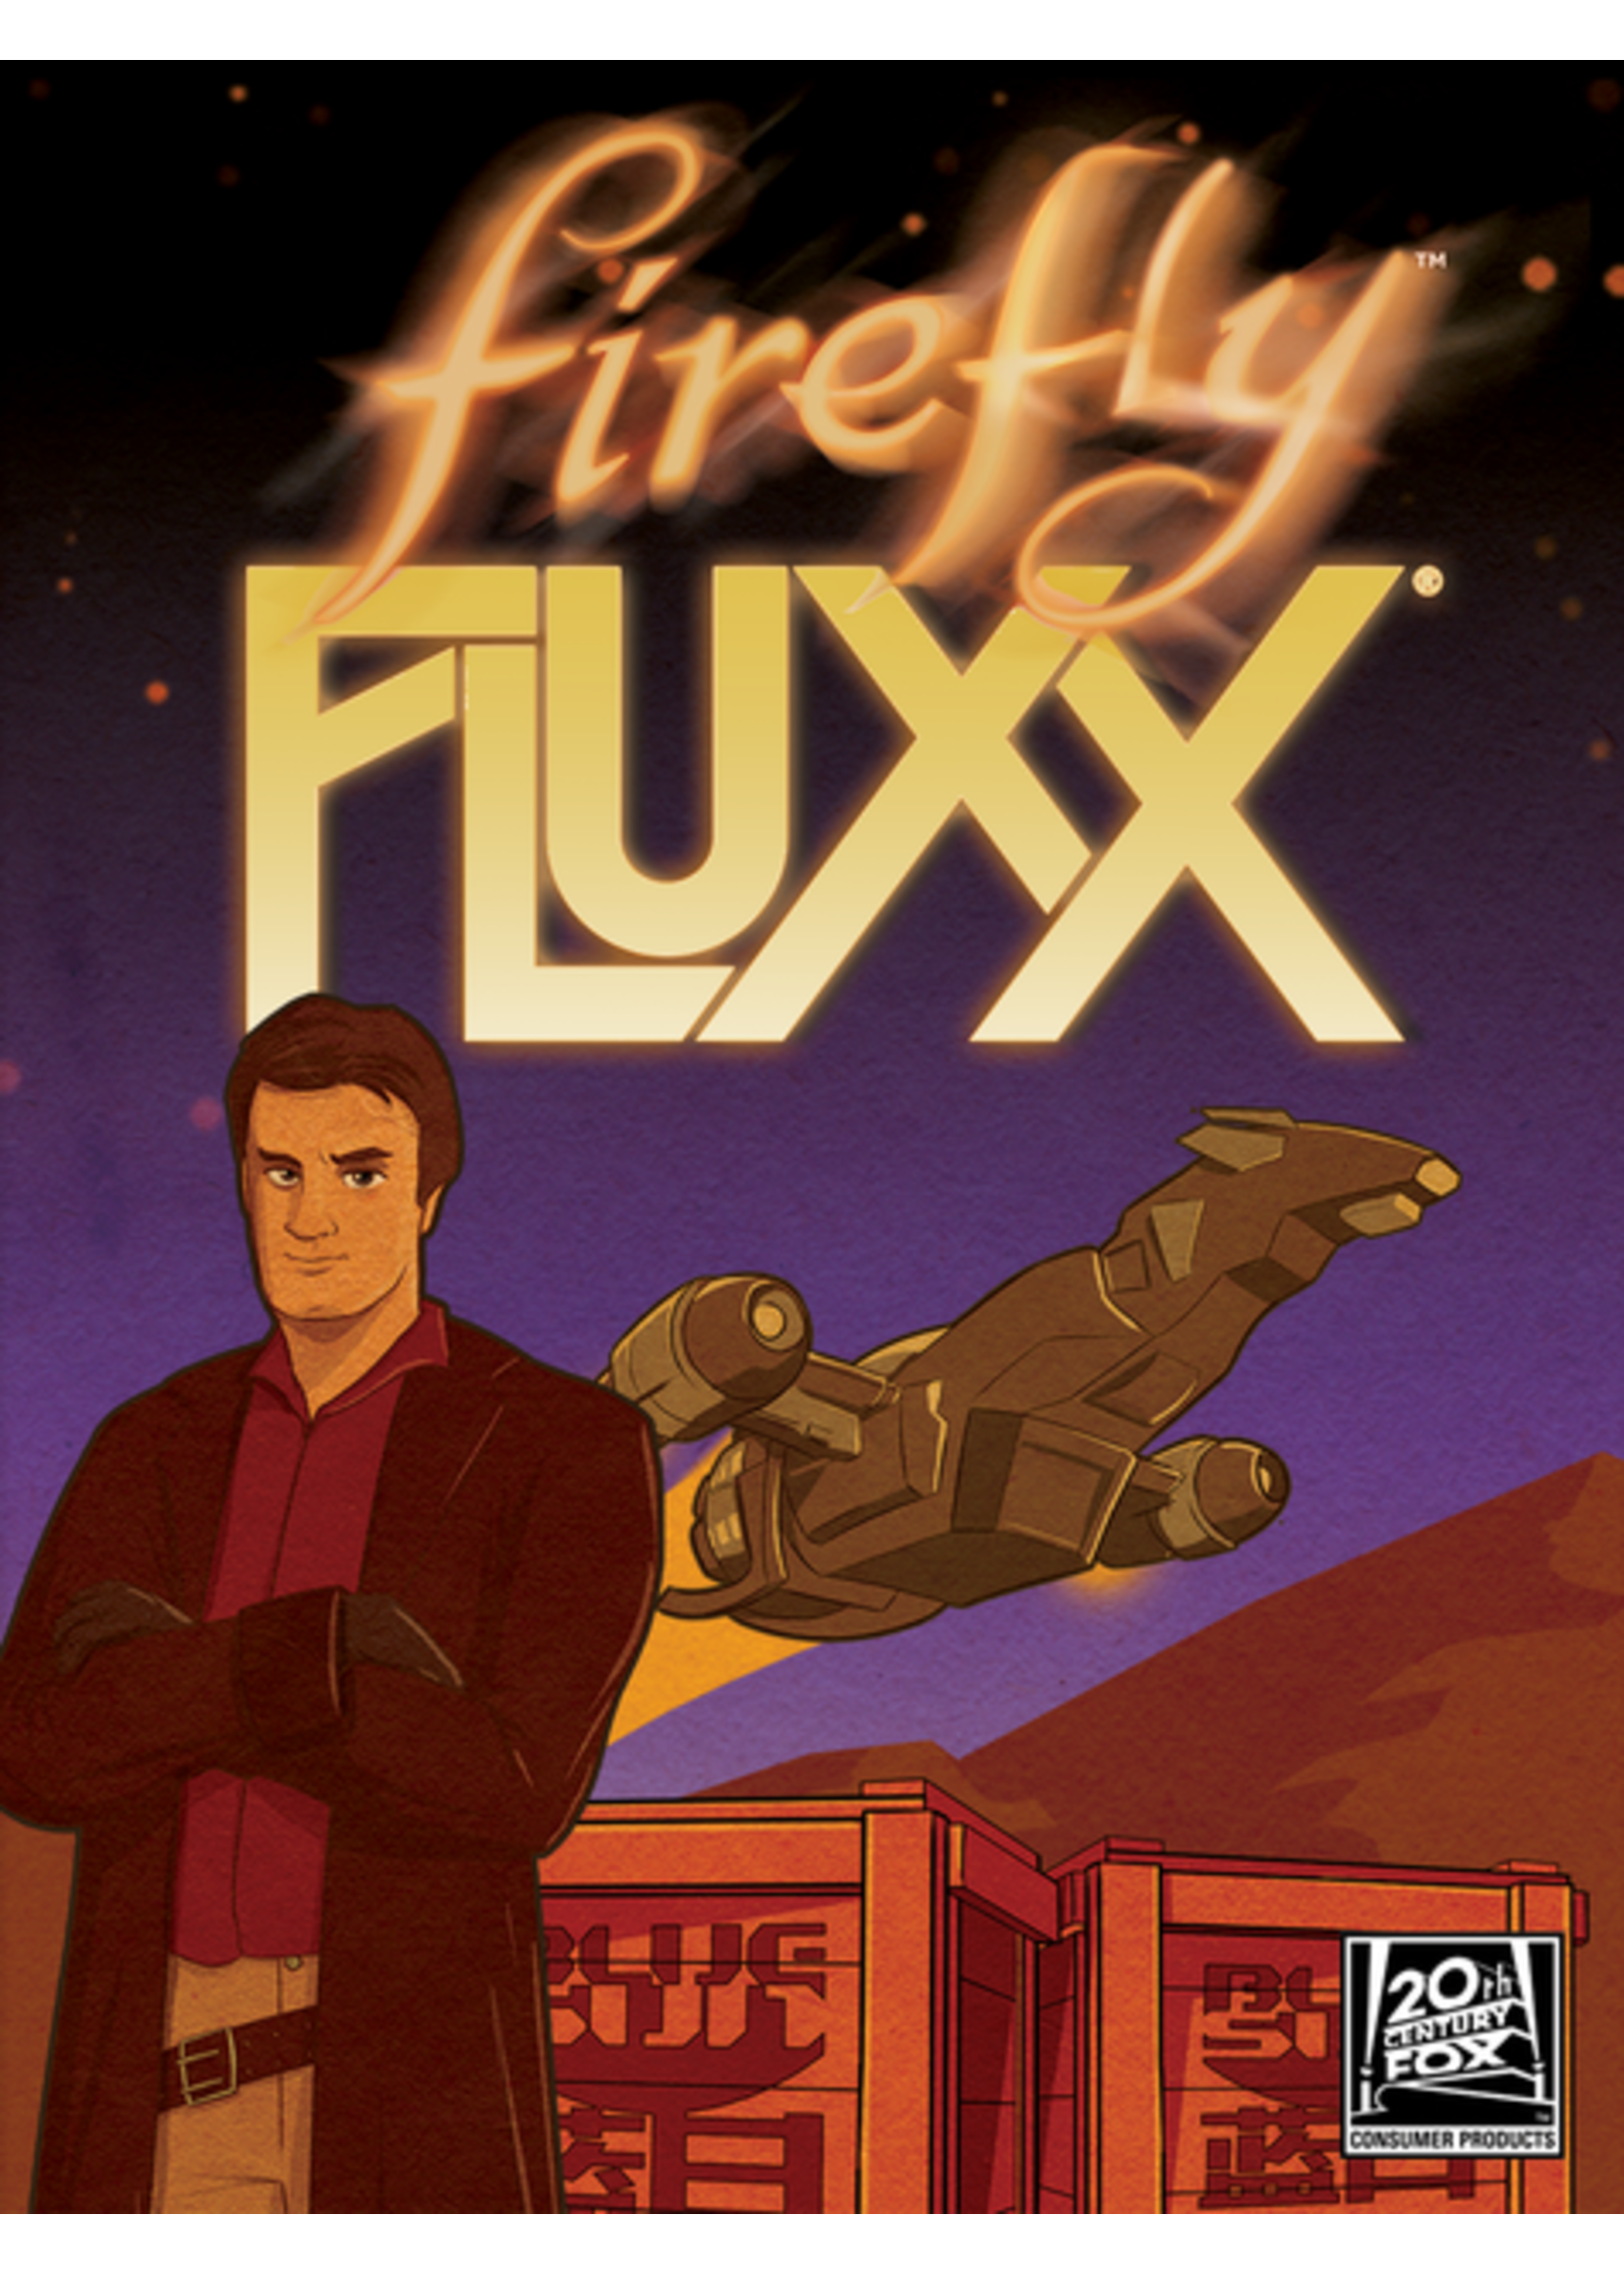 RENTAL - Firefly Fluxx 6.9 oz